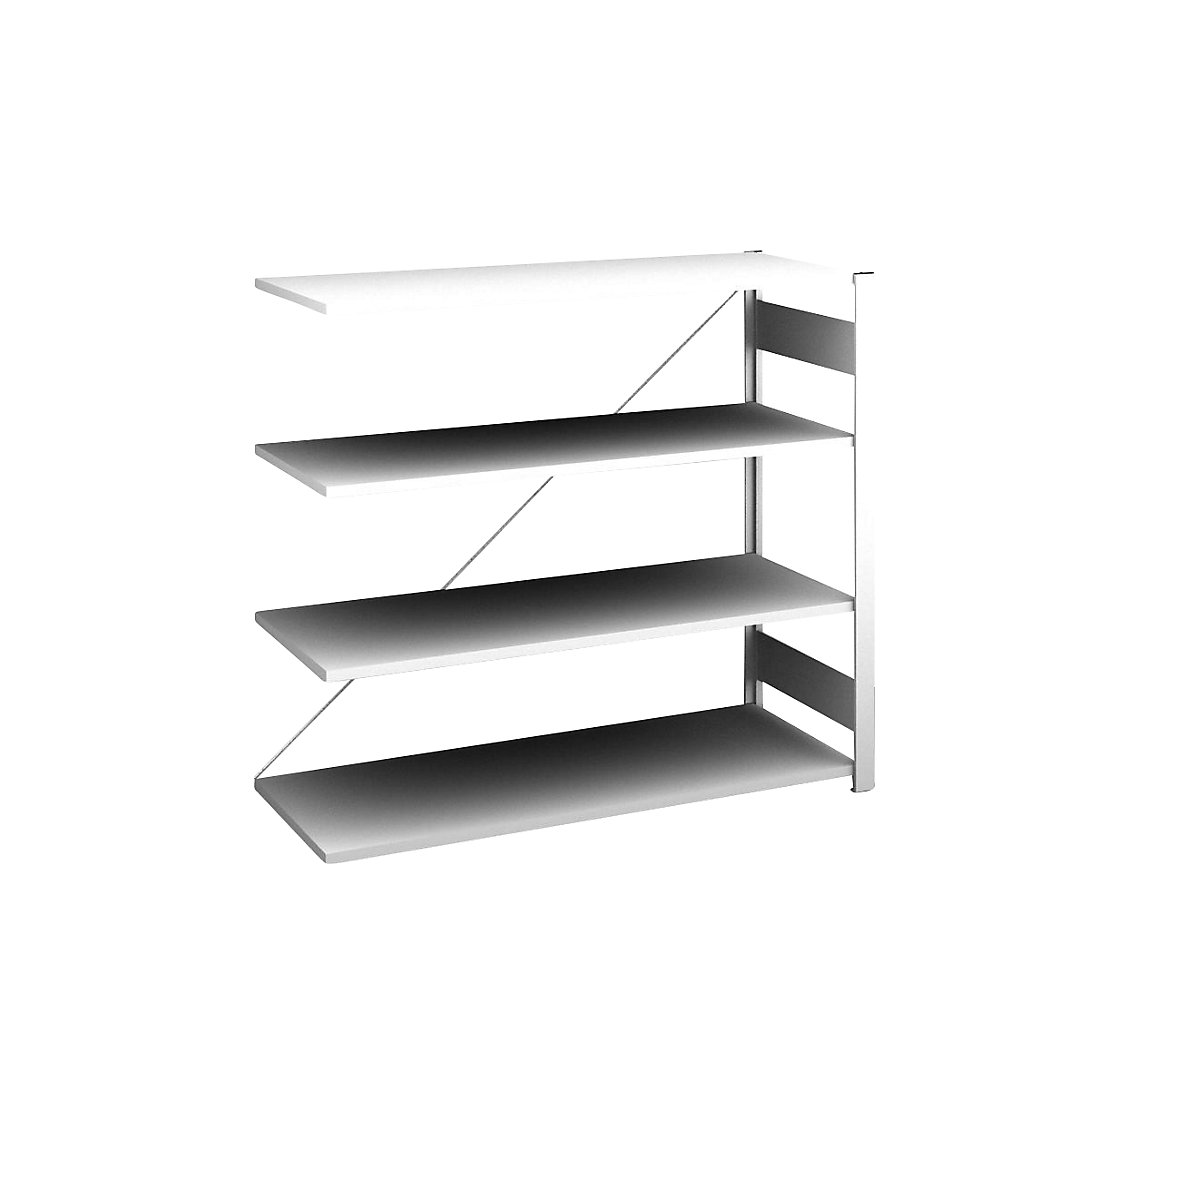 Sideboard shelving unit, light grey – hofe, height 1200 mm, 4 shelves, extension shelf unit, shelf depth 500 mm, max. shelf load 185 kg-5